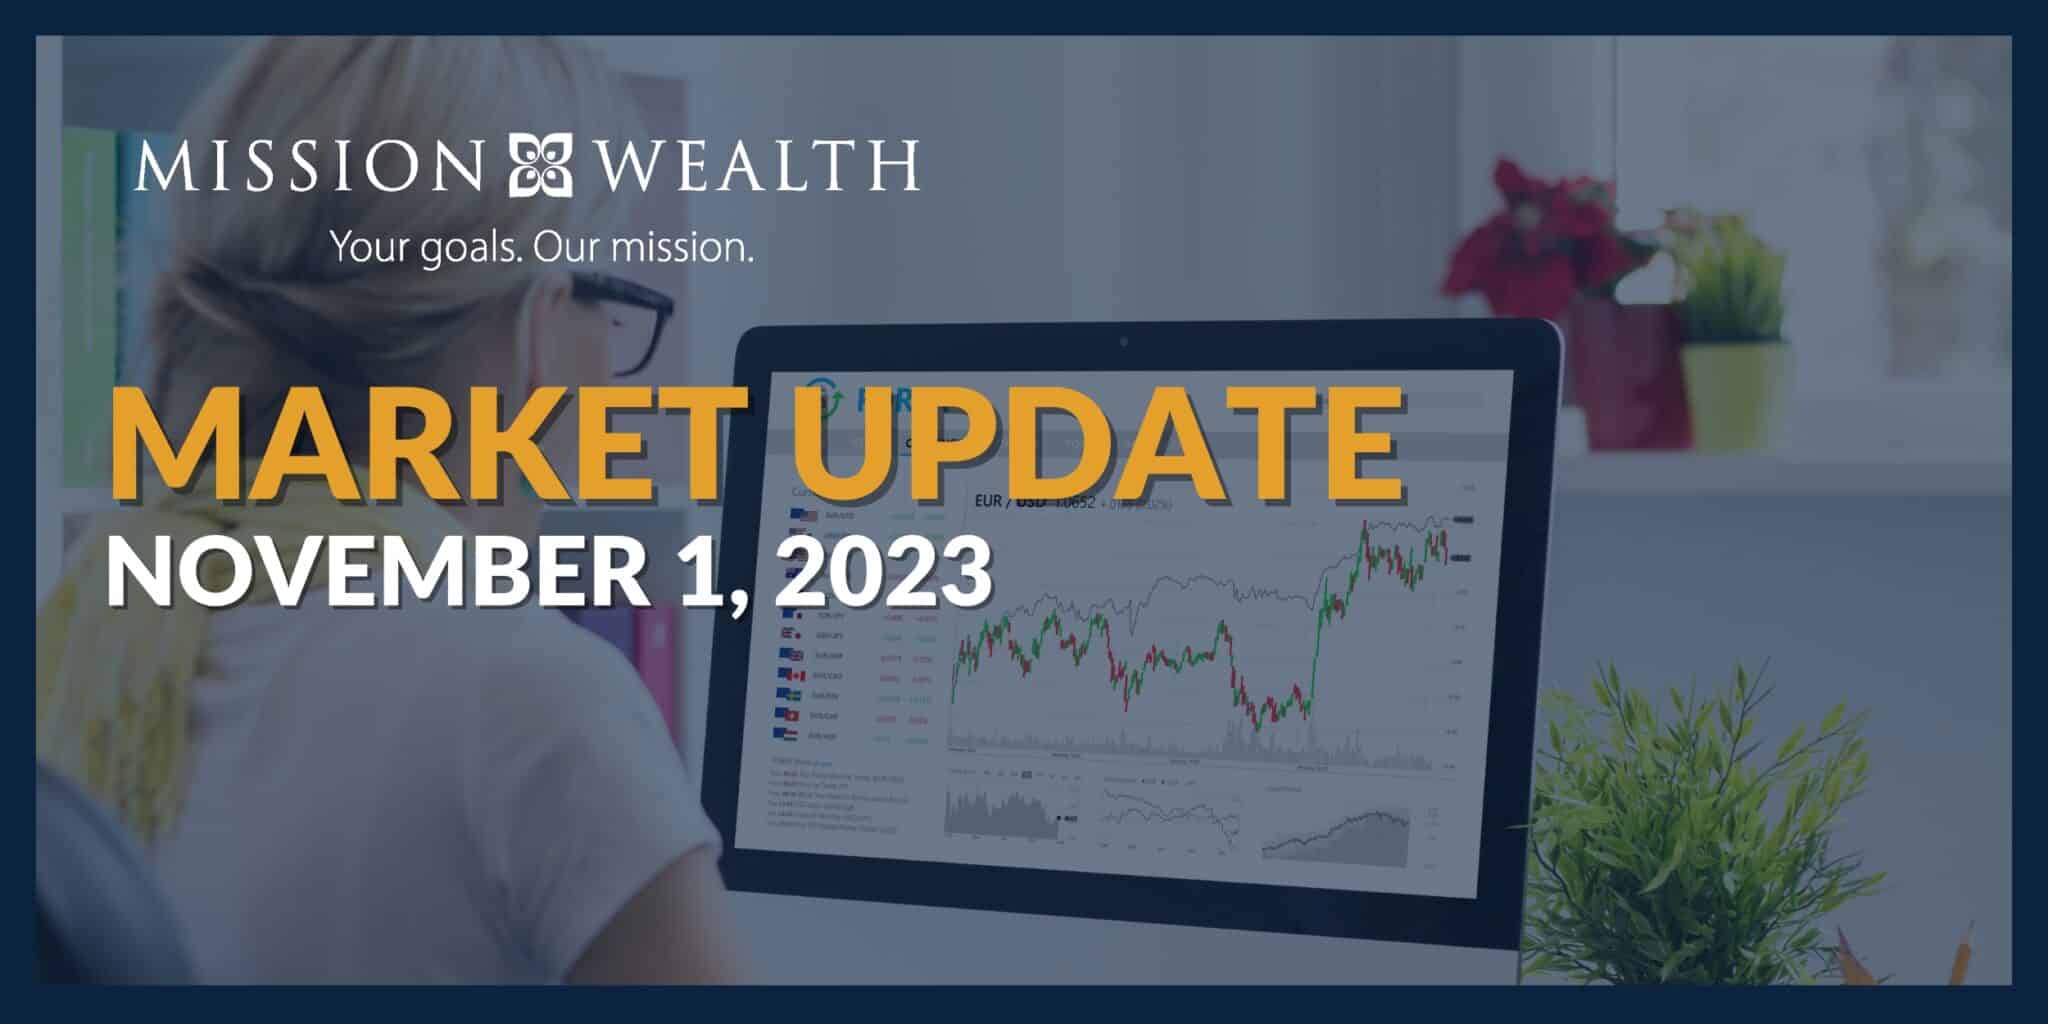 Mission Wealth's Market Update 11123